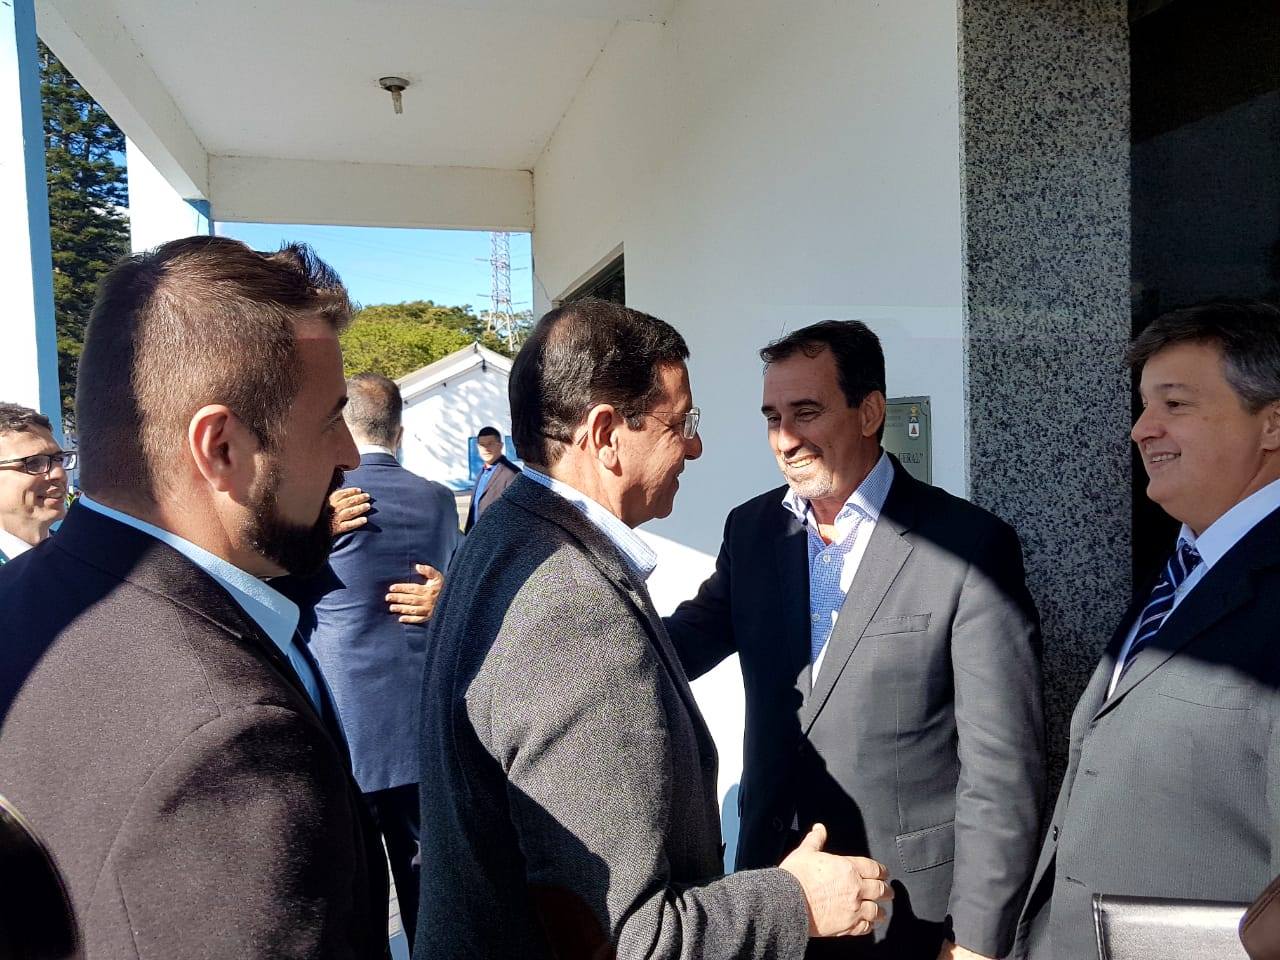 Seguido do secretário Christiano Huguenin, o prefeito Renato Bravo cumprimenta o ministro Gilberto Occhi (Divulgação PMNF)